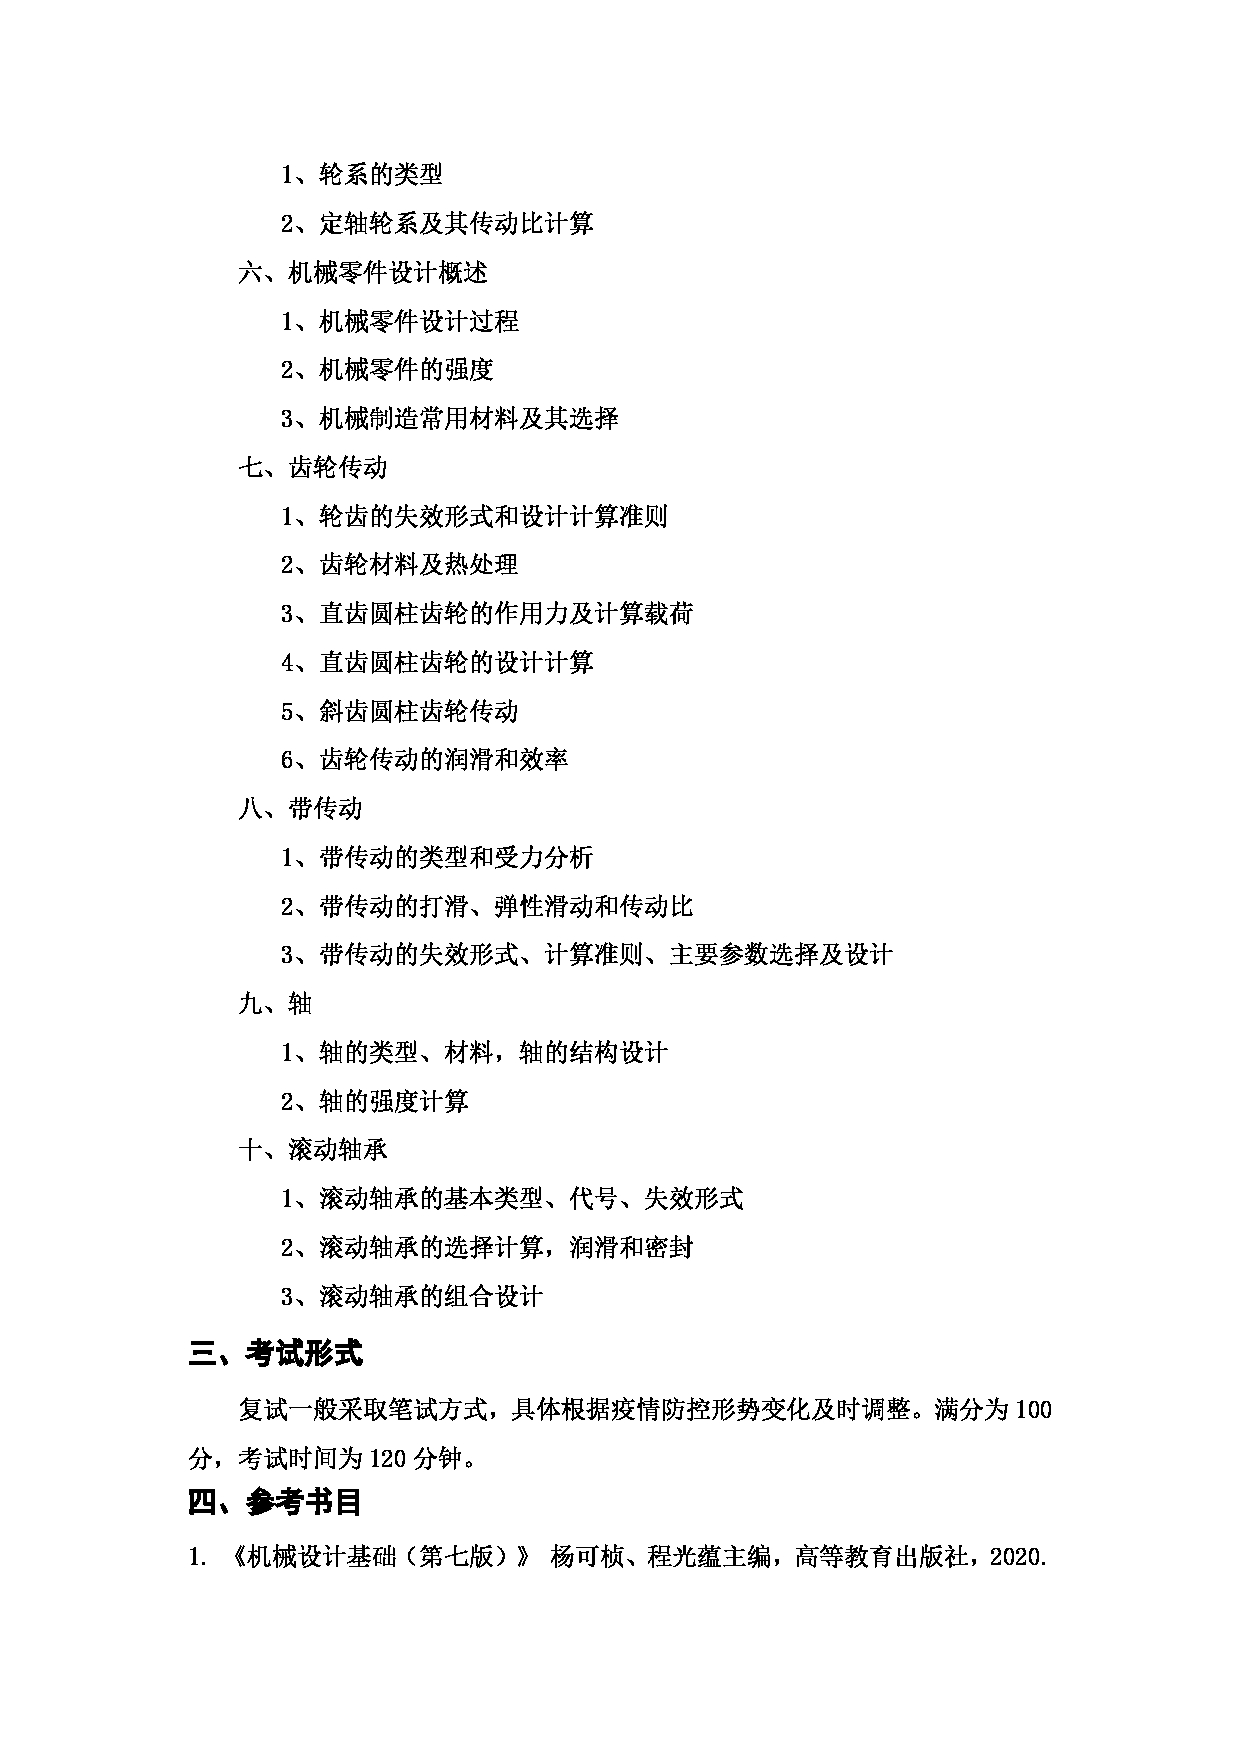 上海海洋大学2023年考研自命题科目 F16《机械设计基础》考试范围第2页